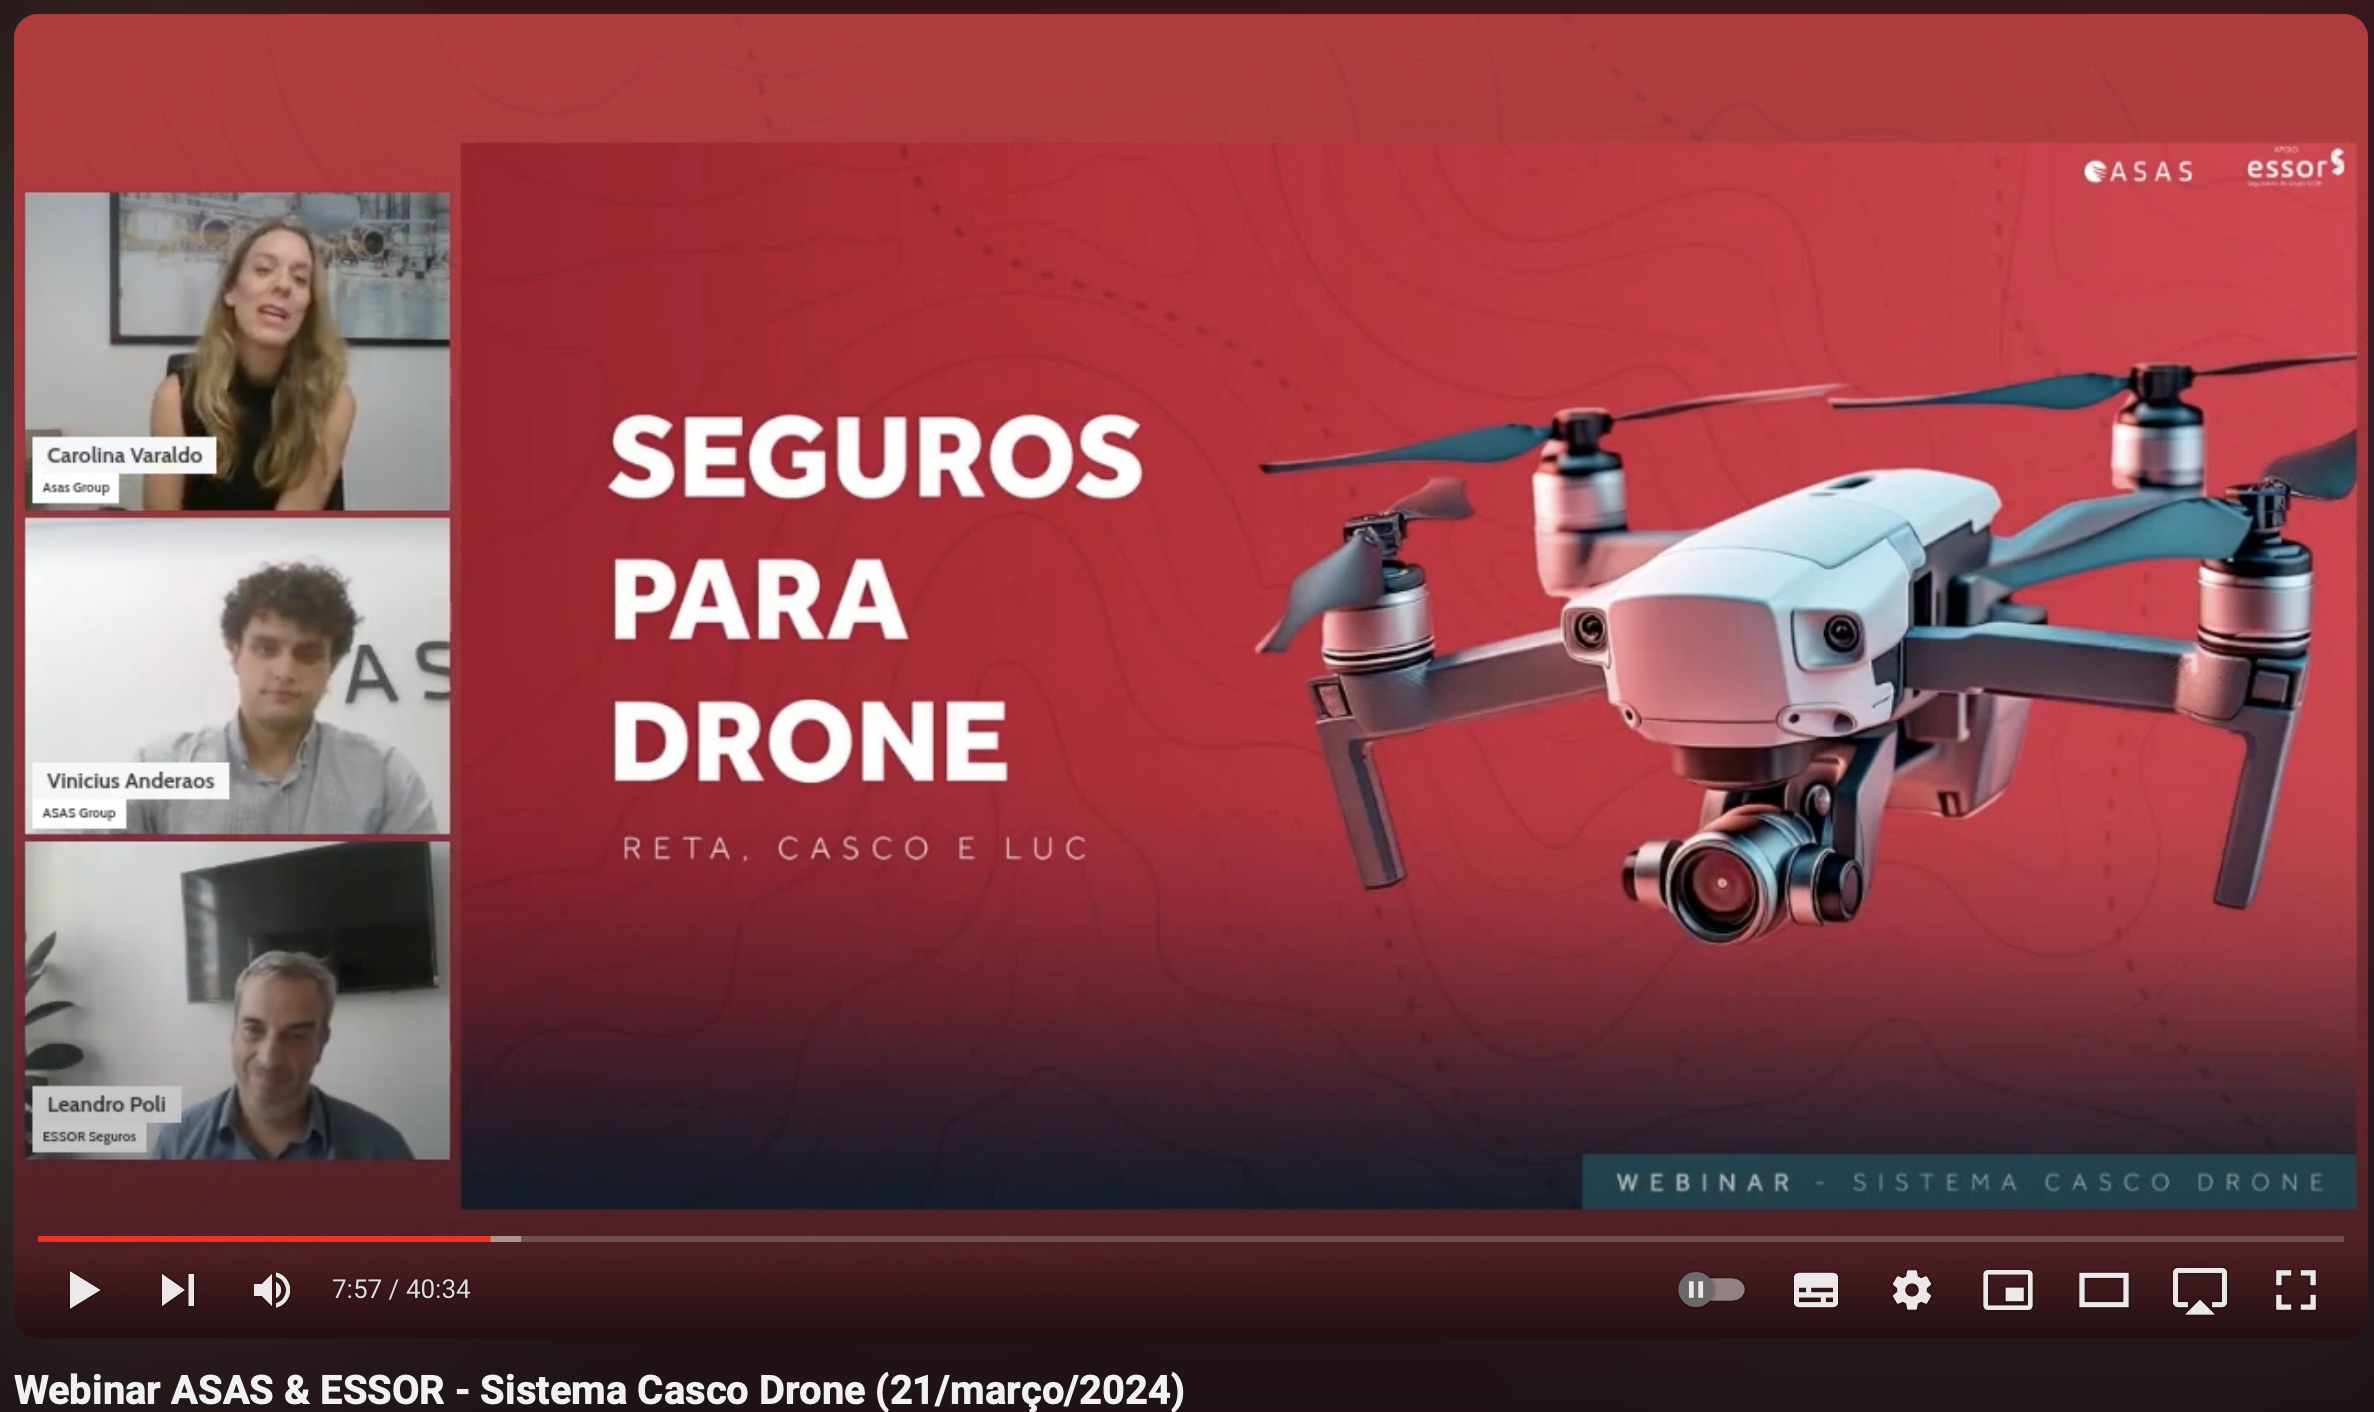 Assista ao Webinar Sistema Casco Drone, oportunidade única no mercado